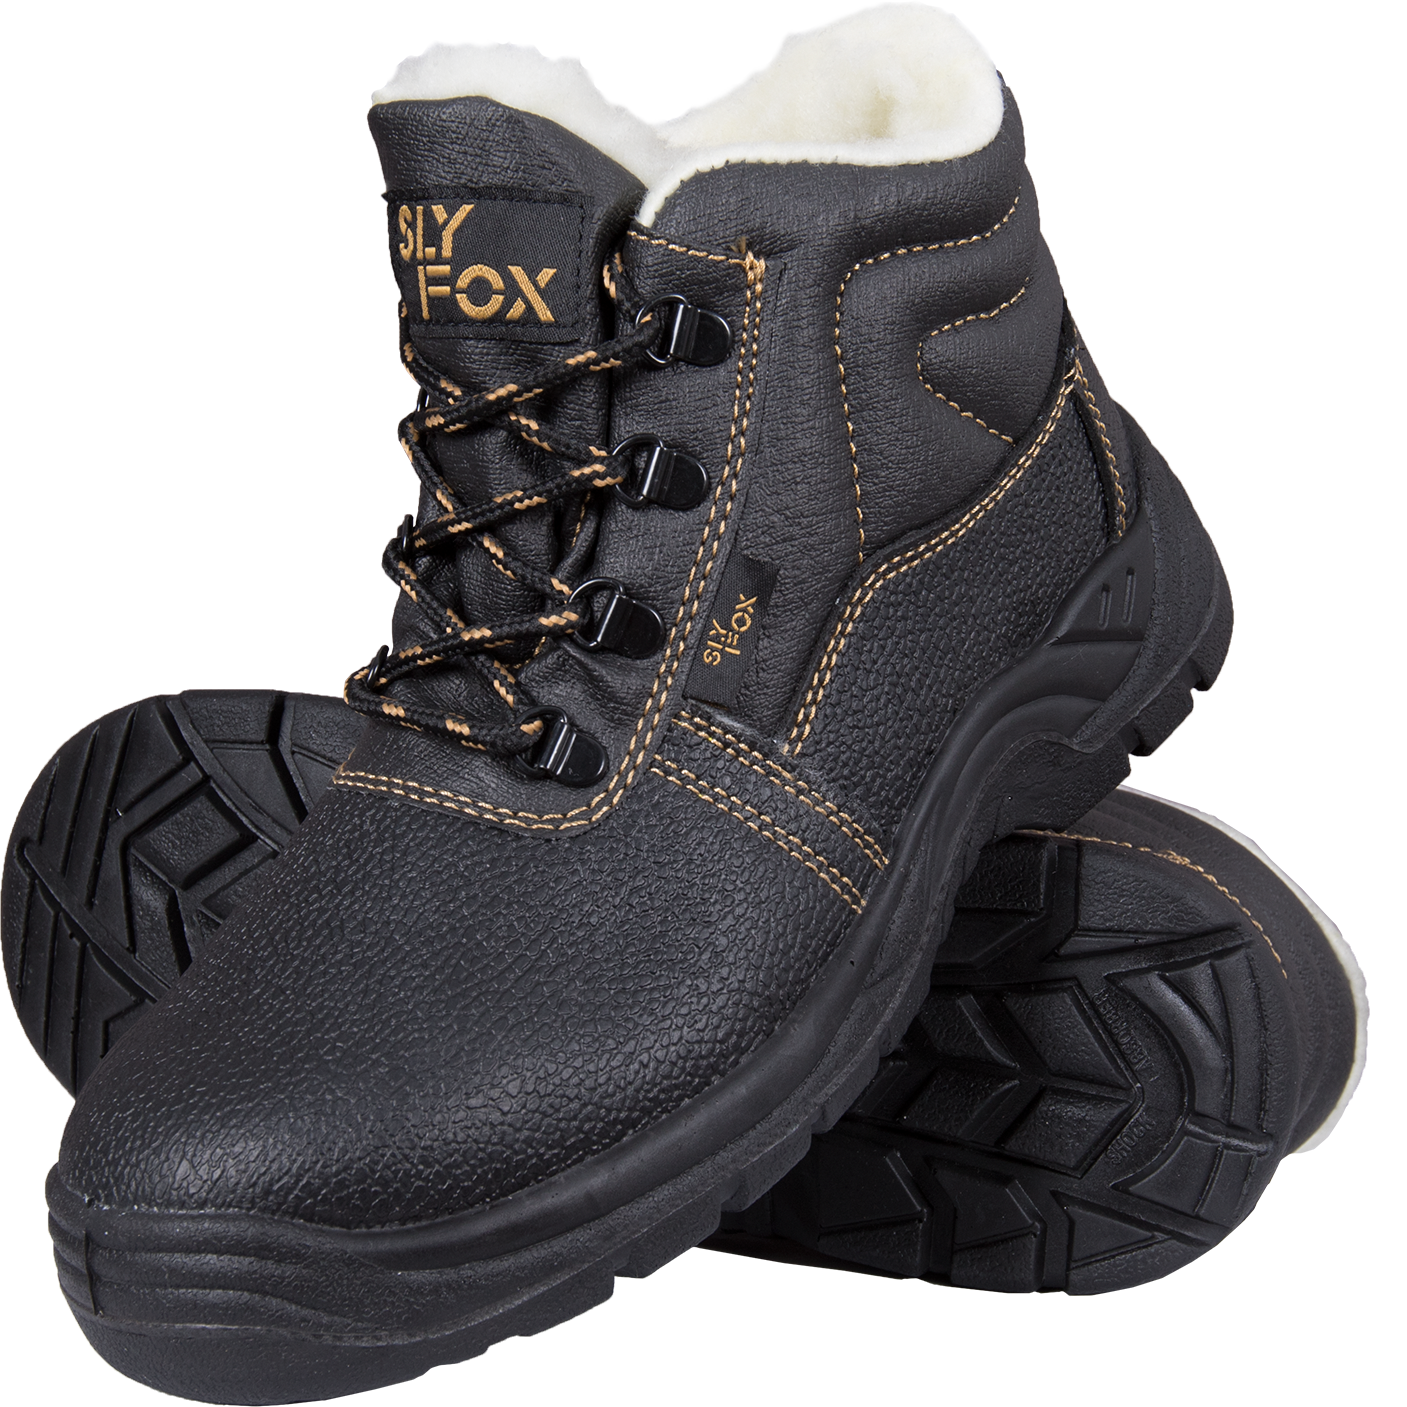 Žieminiai batai OGRIFOX SLX